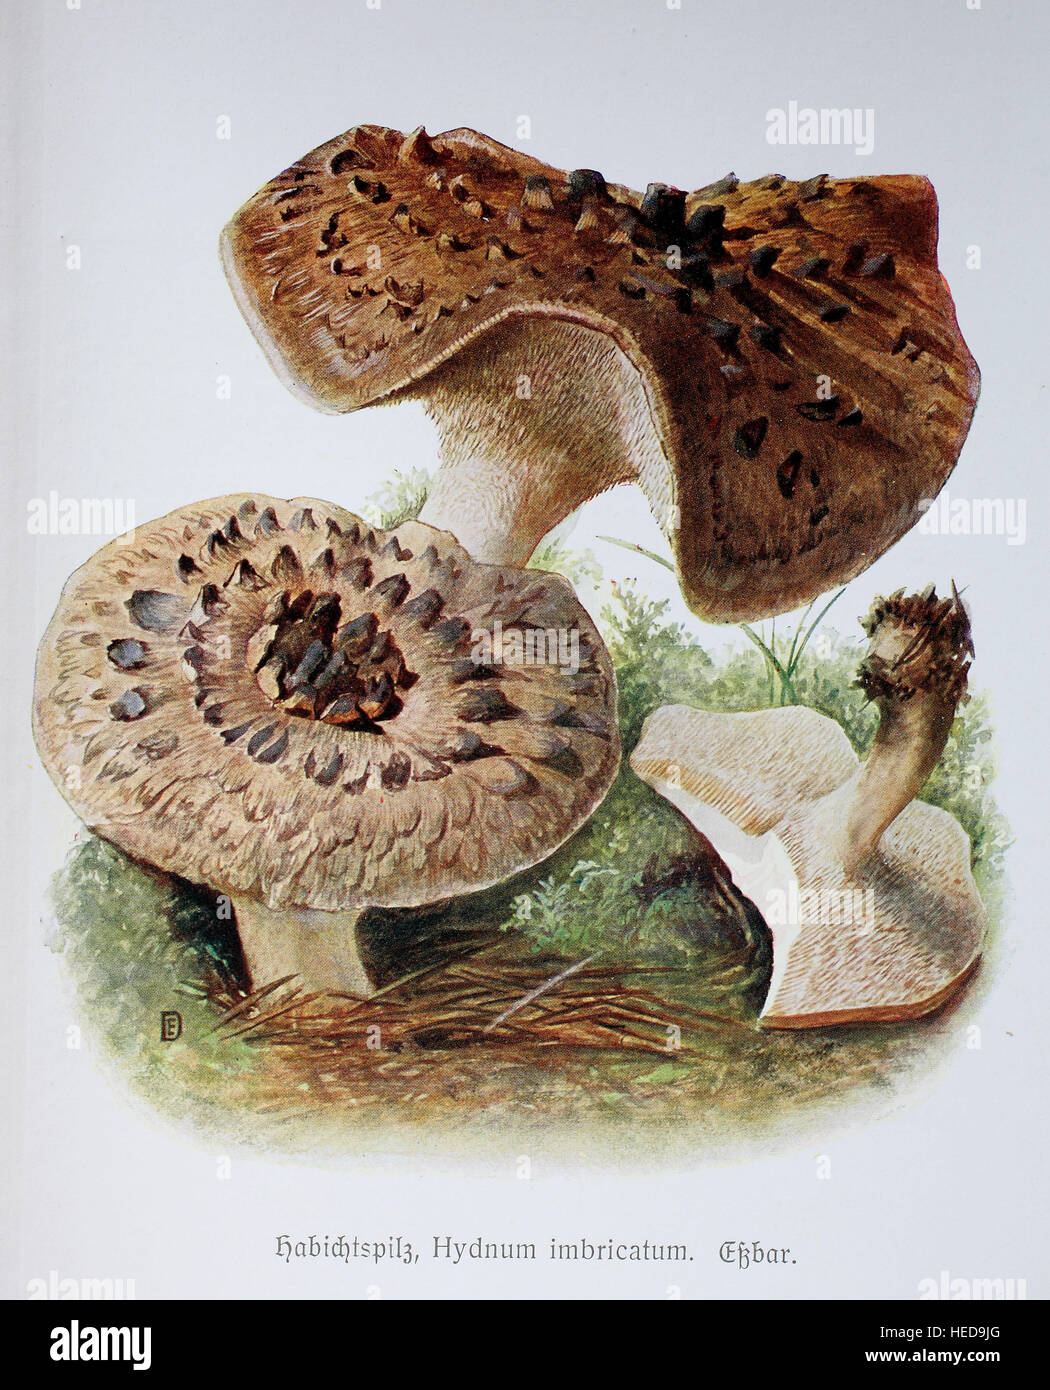 Habichtspilz, Hydnum imbricatum, digitale Reproduktion einer Illustration von Emil Doerstling (1859-1940) Stock Photo